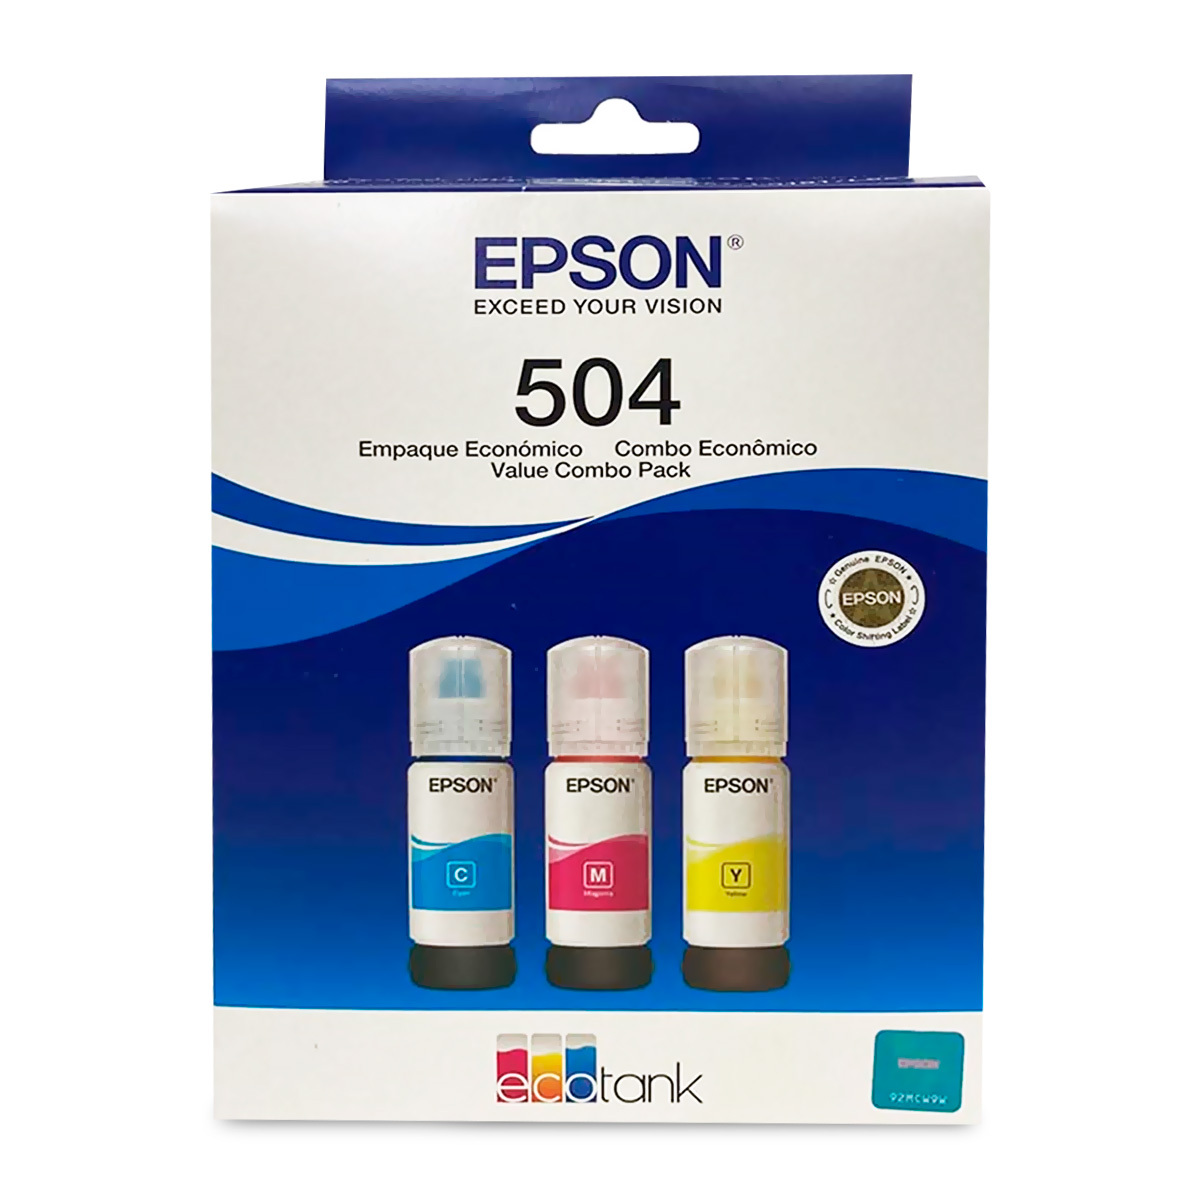 Botella de Tinta EPSON T504